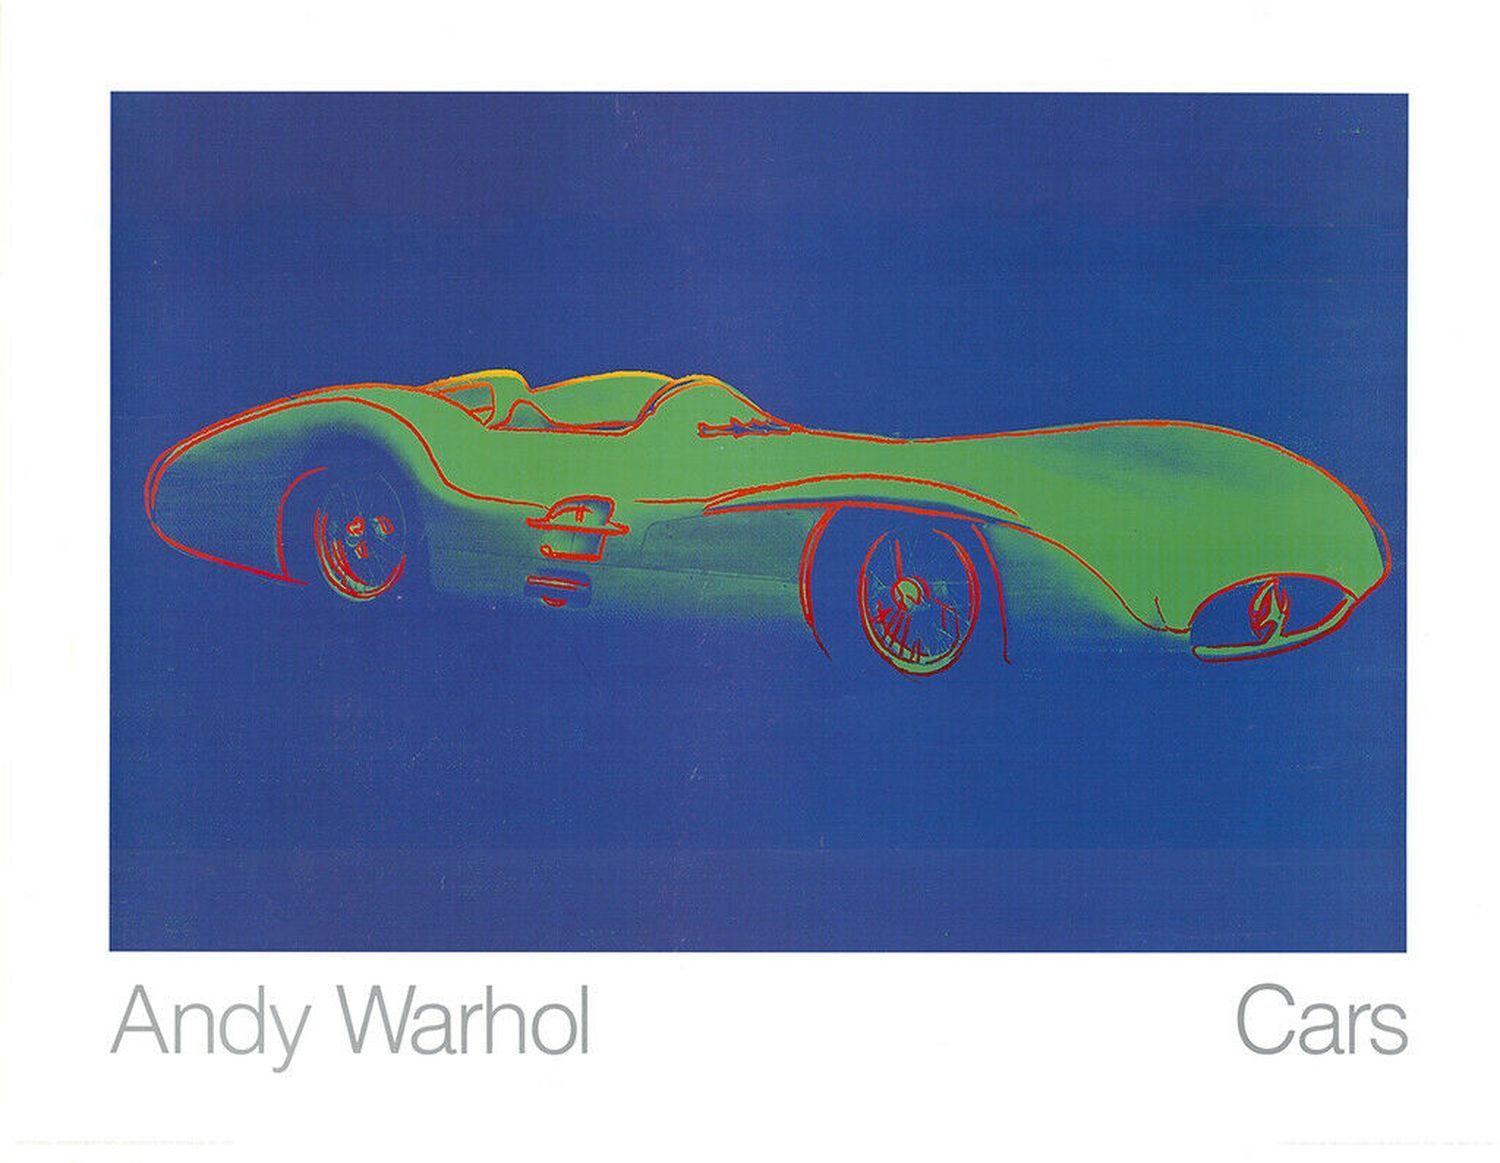 Andy Warhol 安迪-沃霍尔（后）
一级方程式赛车 梅赛德斯-奔驰W 196

在1982年的原版基础上用厚纸打印
尺寸：70 x 90厘米
状况良好 &hellip;